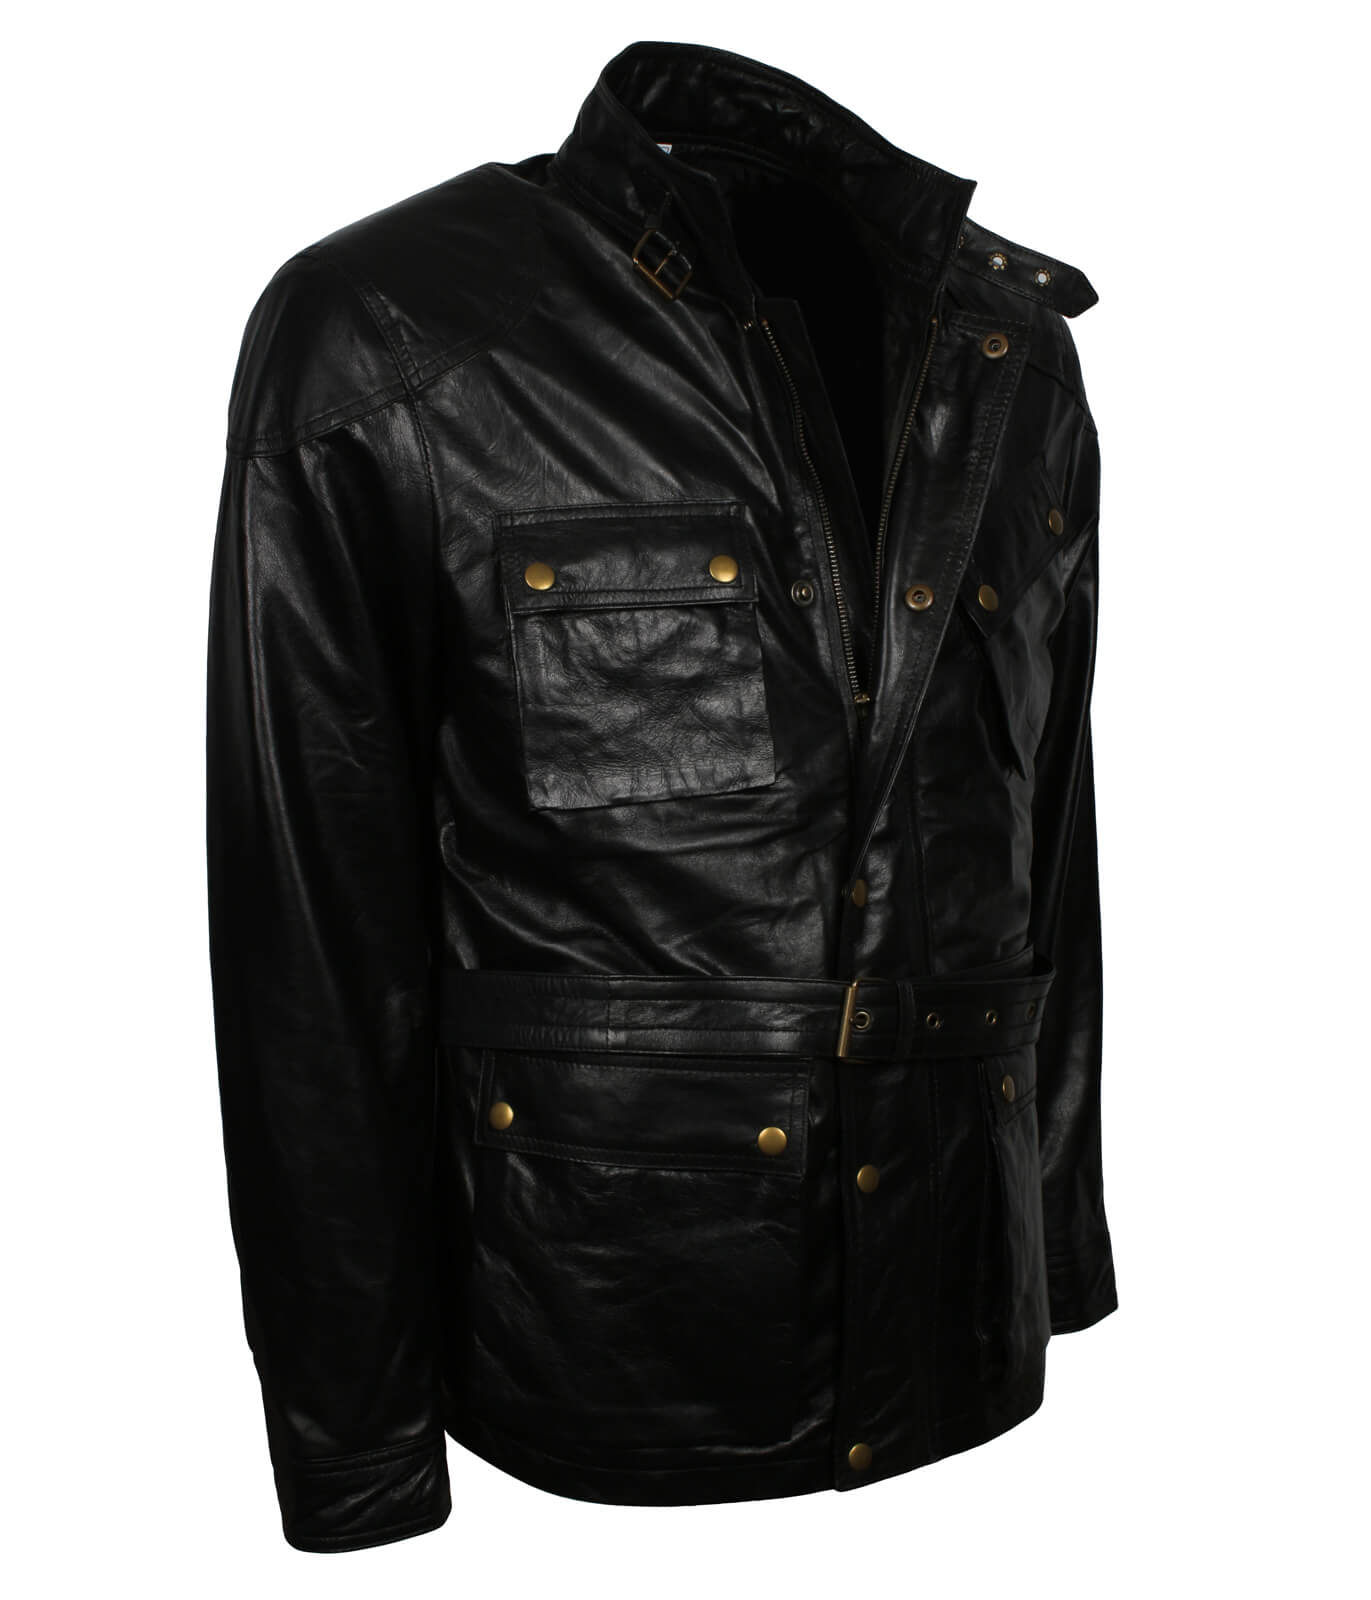 Black Sheepskin Leather Jacket With Belt